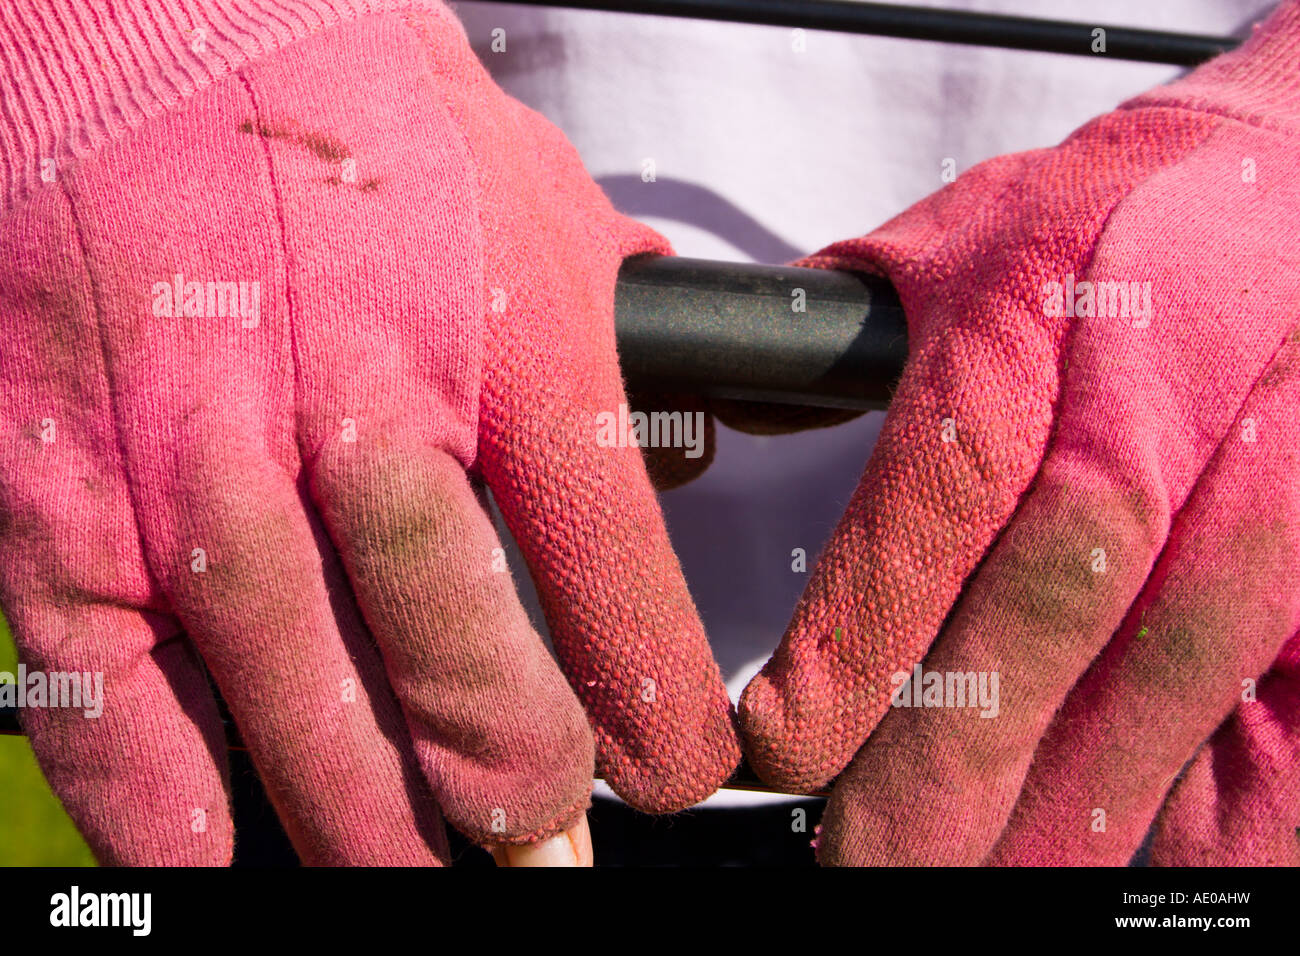 https://c8.alamy.com/compes/ae0ahw/mujer-vistiendo-rosa-guantes-de-trabajo-descansando-en-manos-cortadora-de-cesped-manejar-ae0ahw.jpg